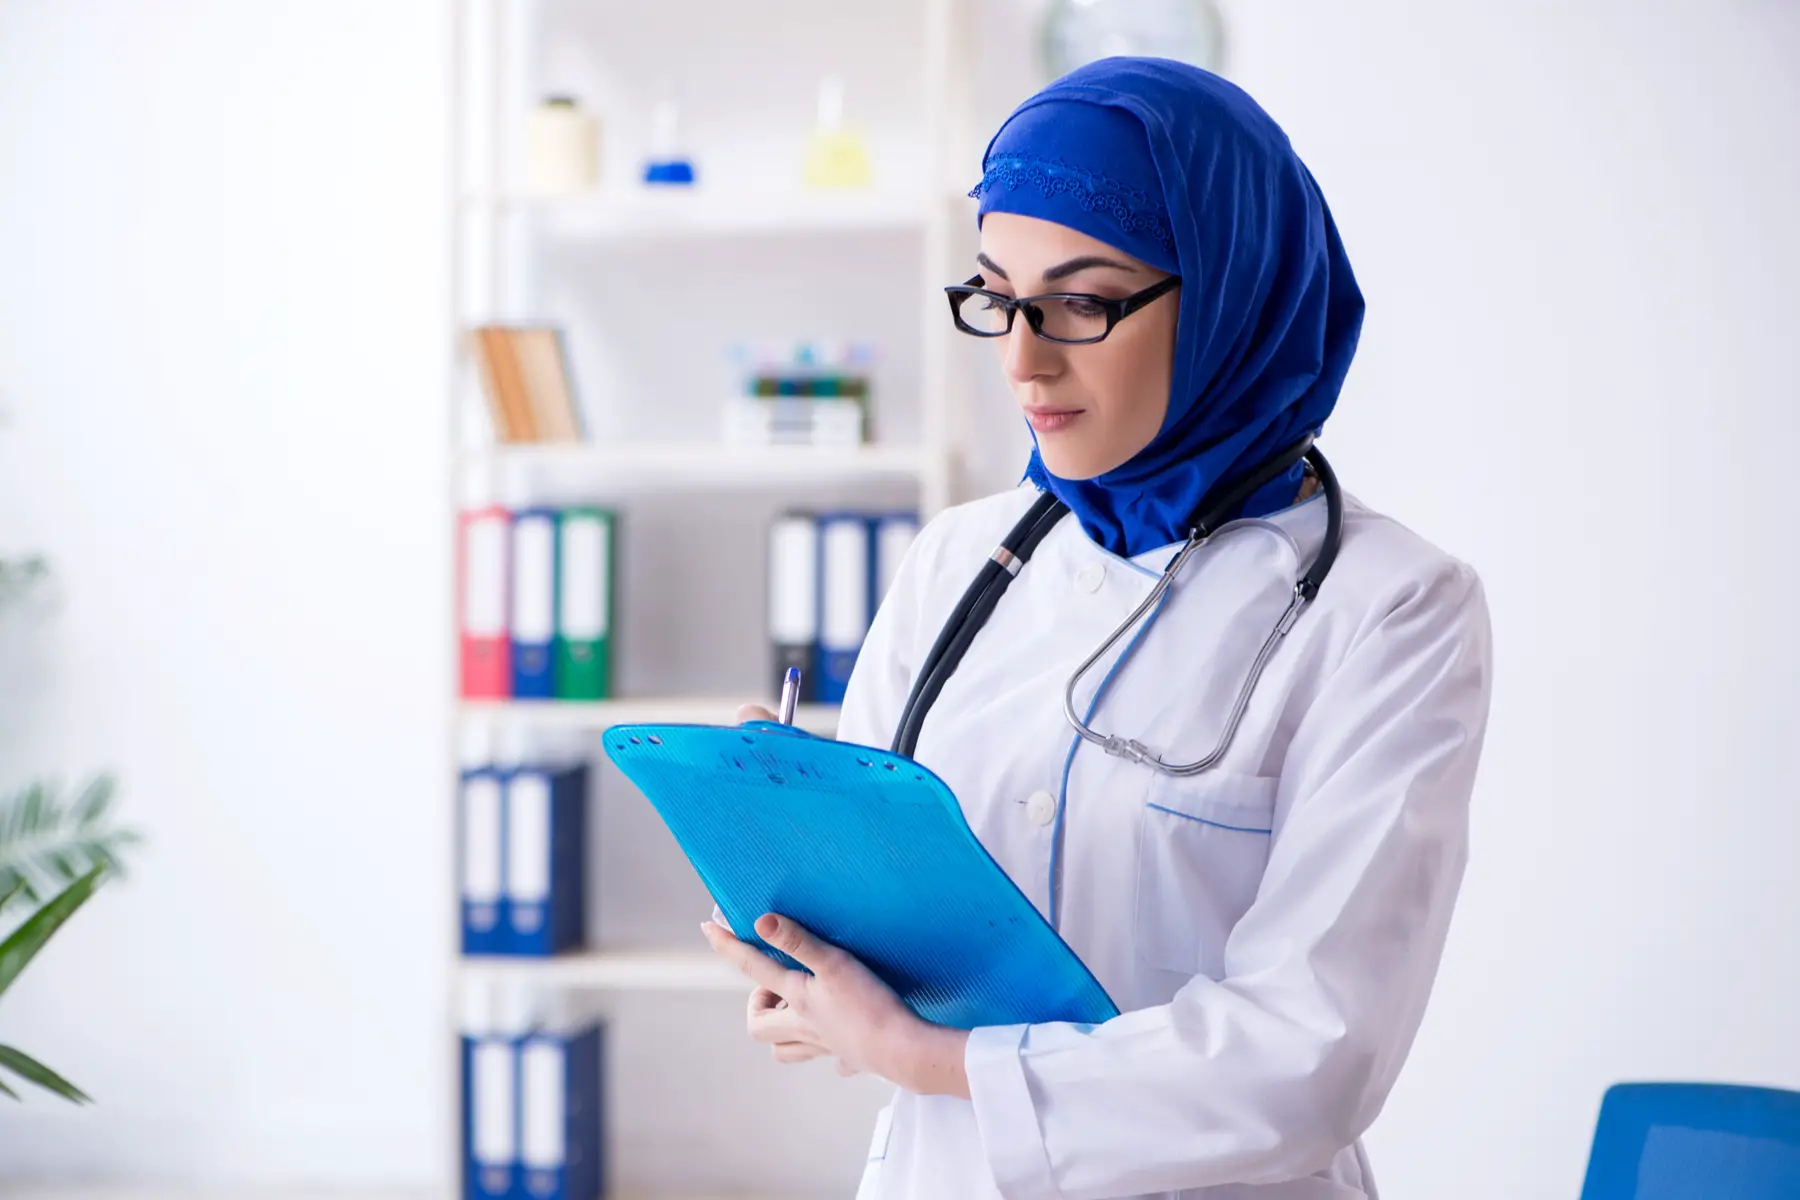 Emirati doctor